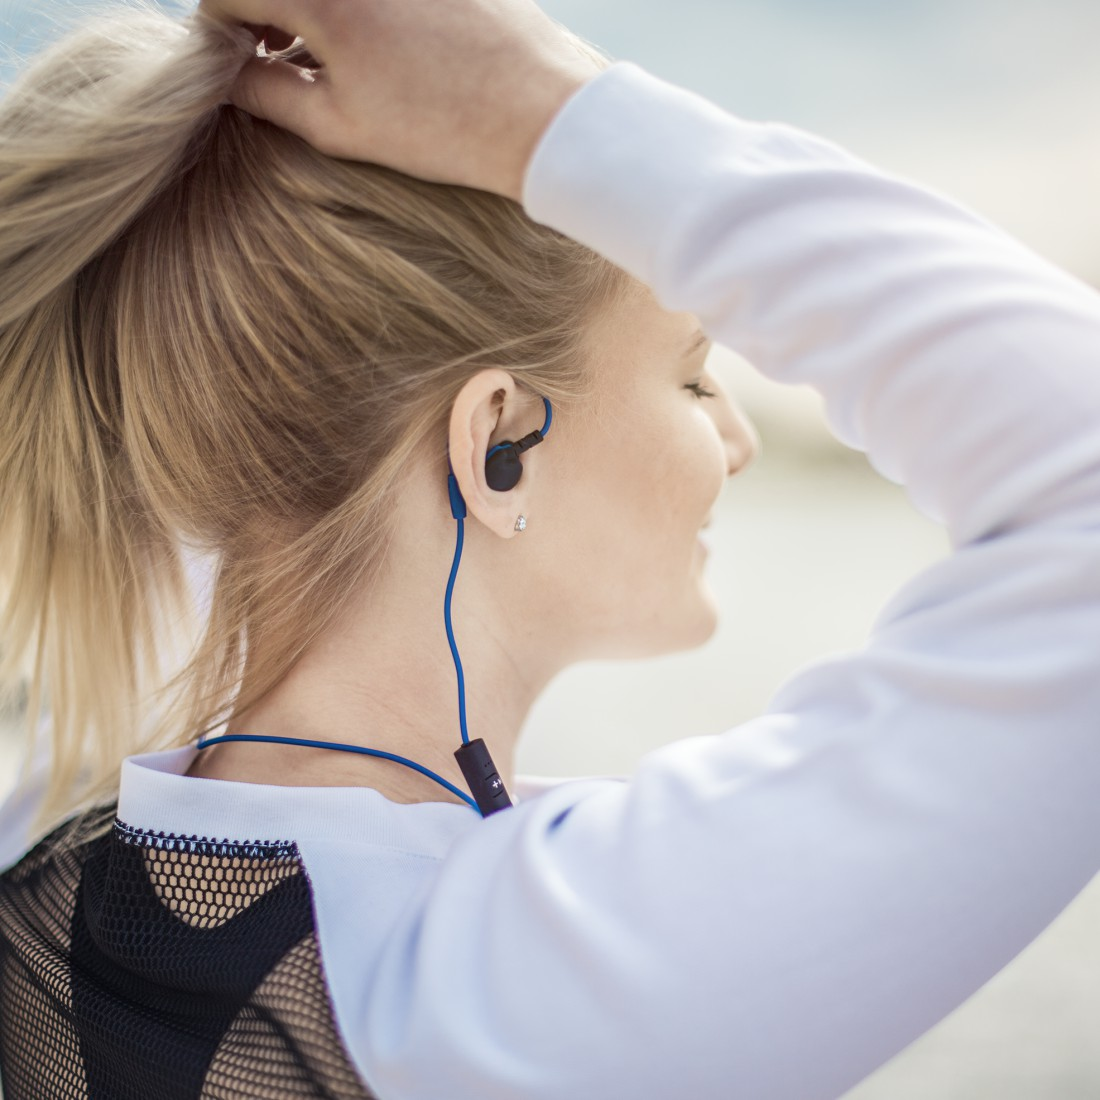 Schwarz/Blau In-ear Bluetooth Kopfhörer HAMA Freedom Athletics,